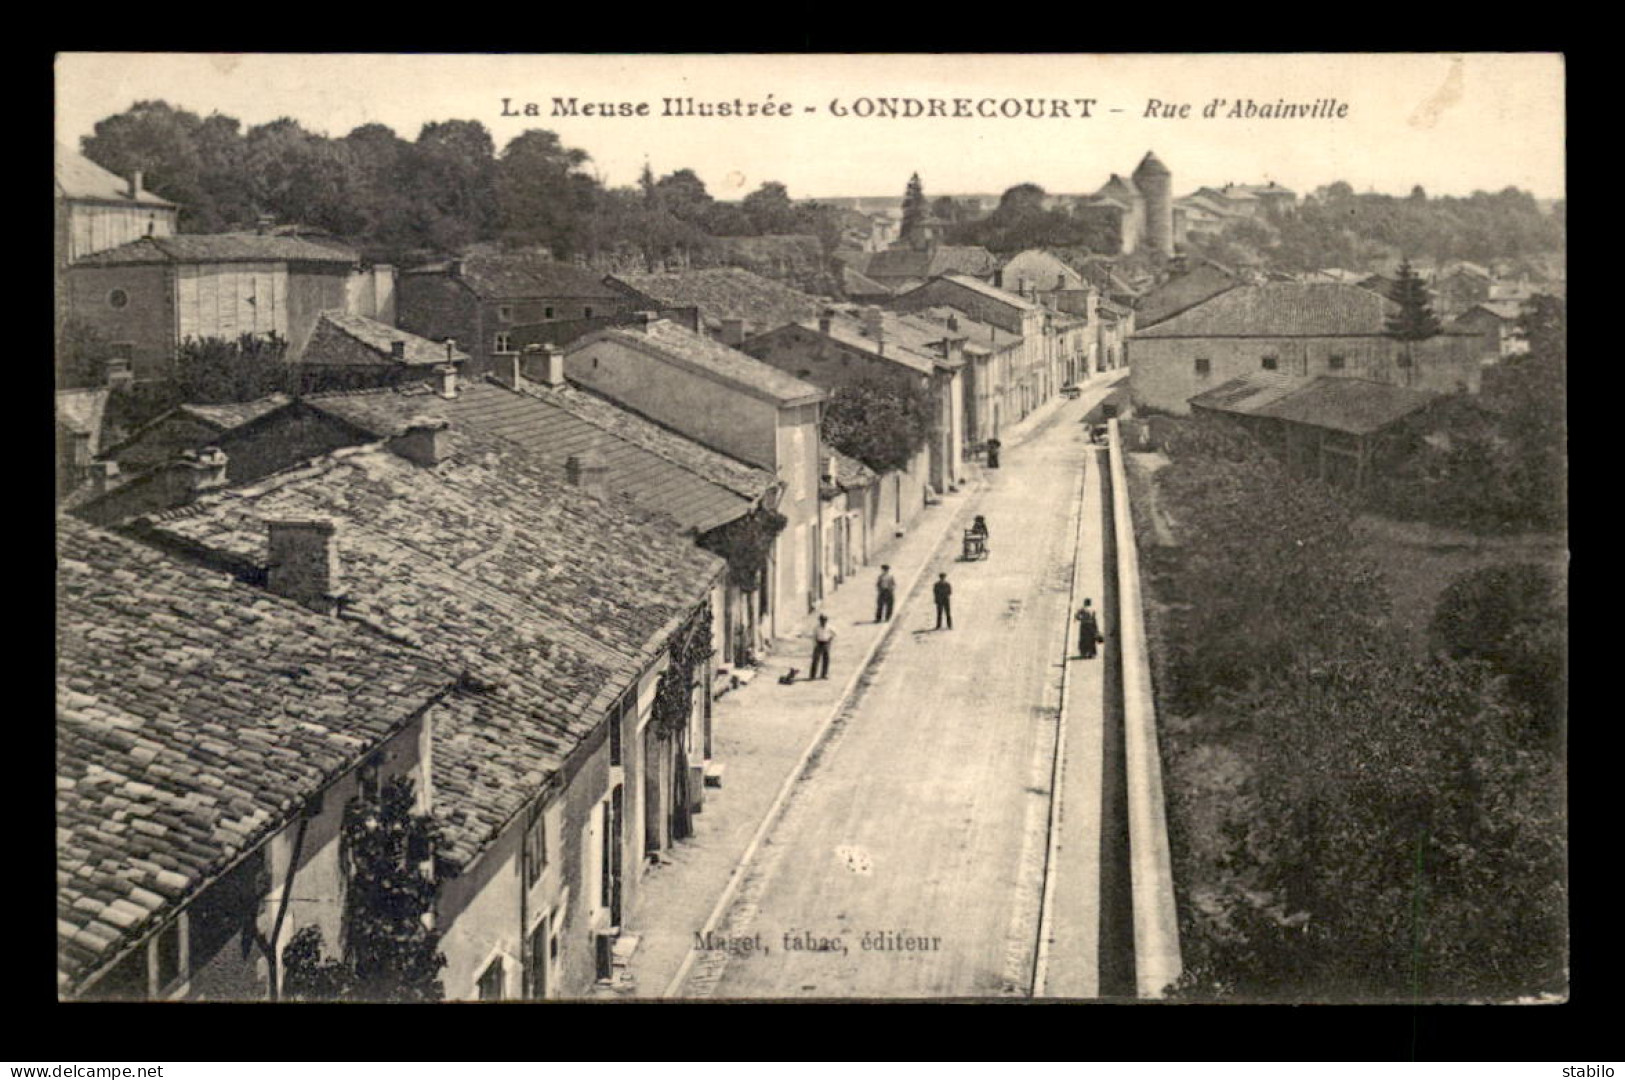 55 - GONDRECOURT - RUE D'ABAINVILLE - EDITEUR MAGET - Gondrecourt Le Chateau